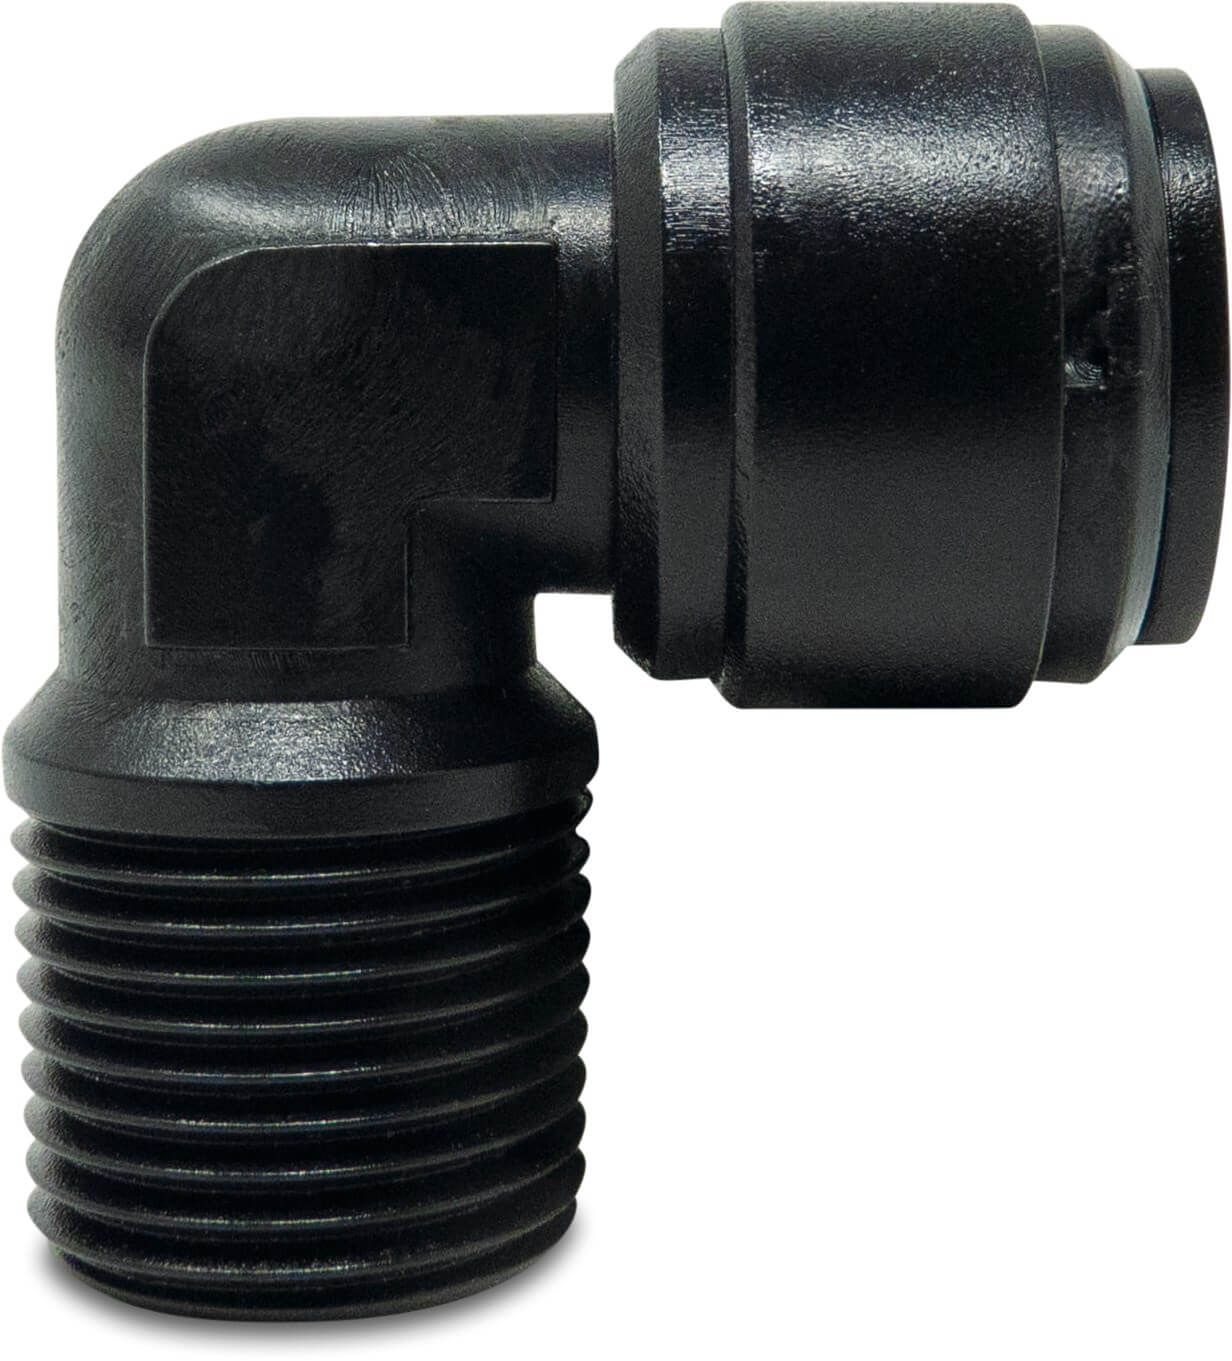 Adaptor elbow 90° POM 4 mm x 1/8" push-in x male thread 20bar black WRAS type Aquaspeed